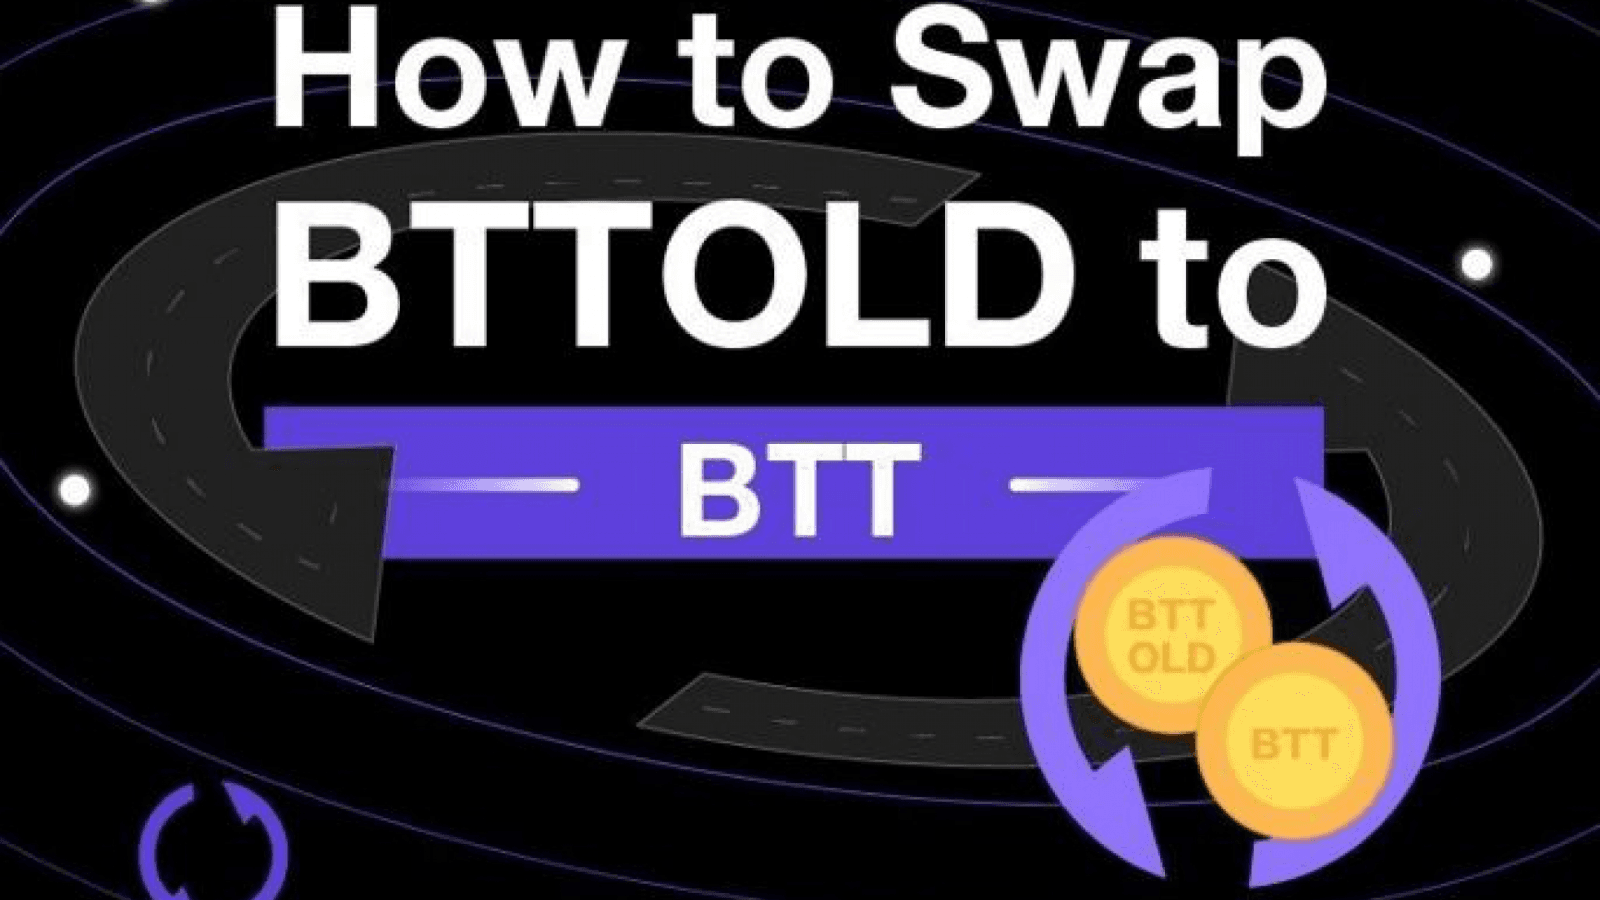 چگونه میتوان BTTOLD را به  BTTC جدید تبدیل کرد؟